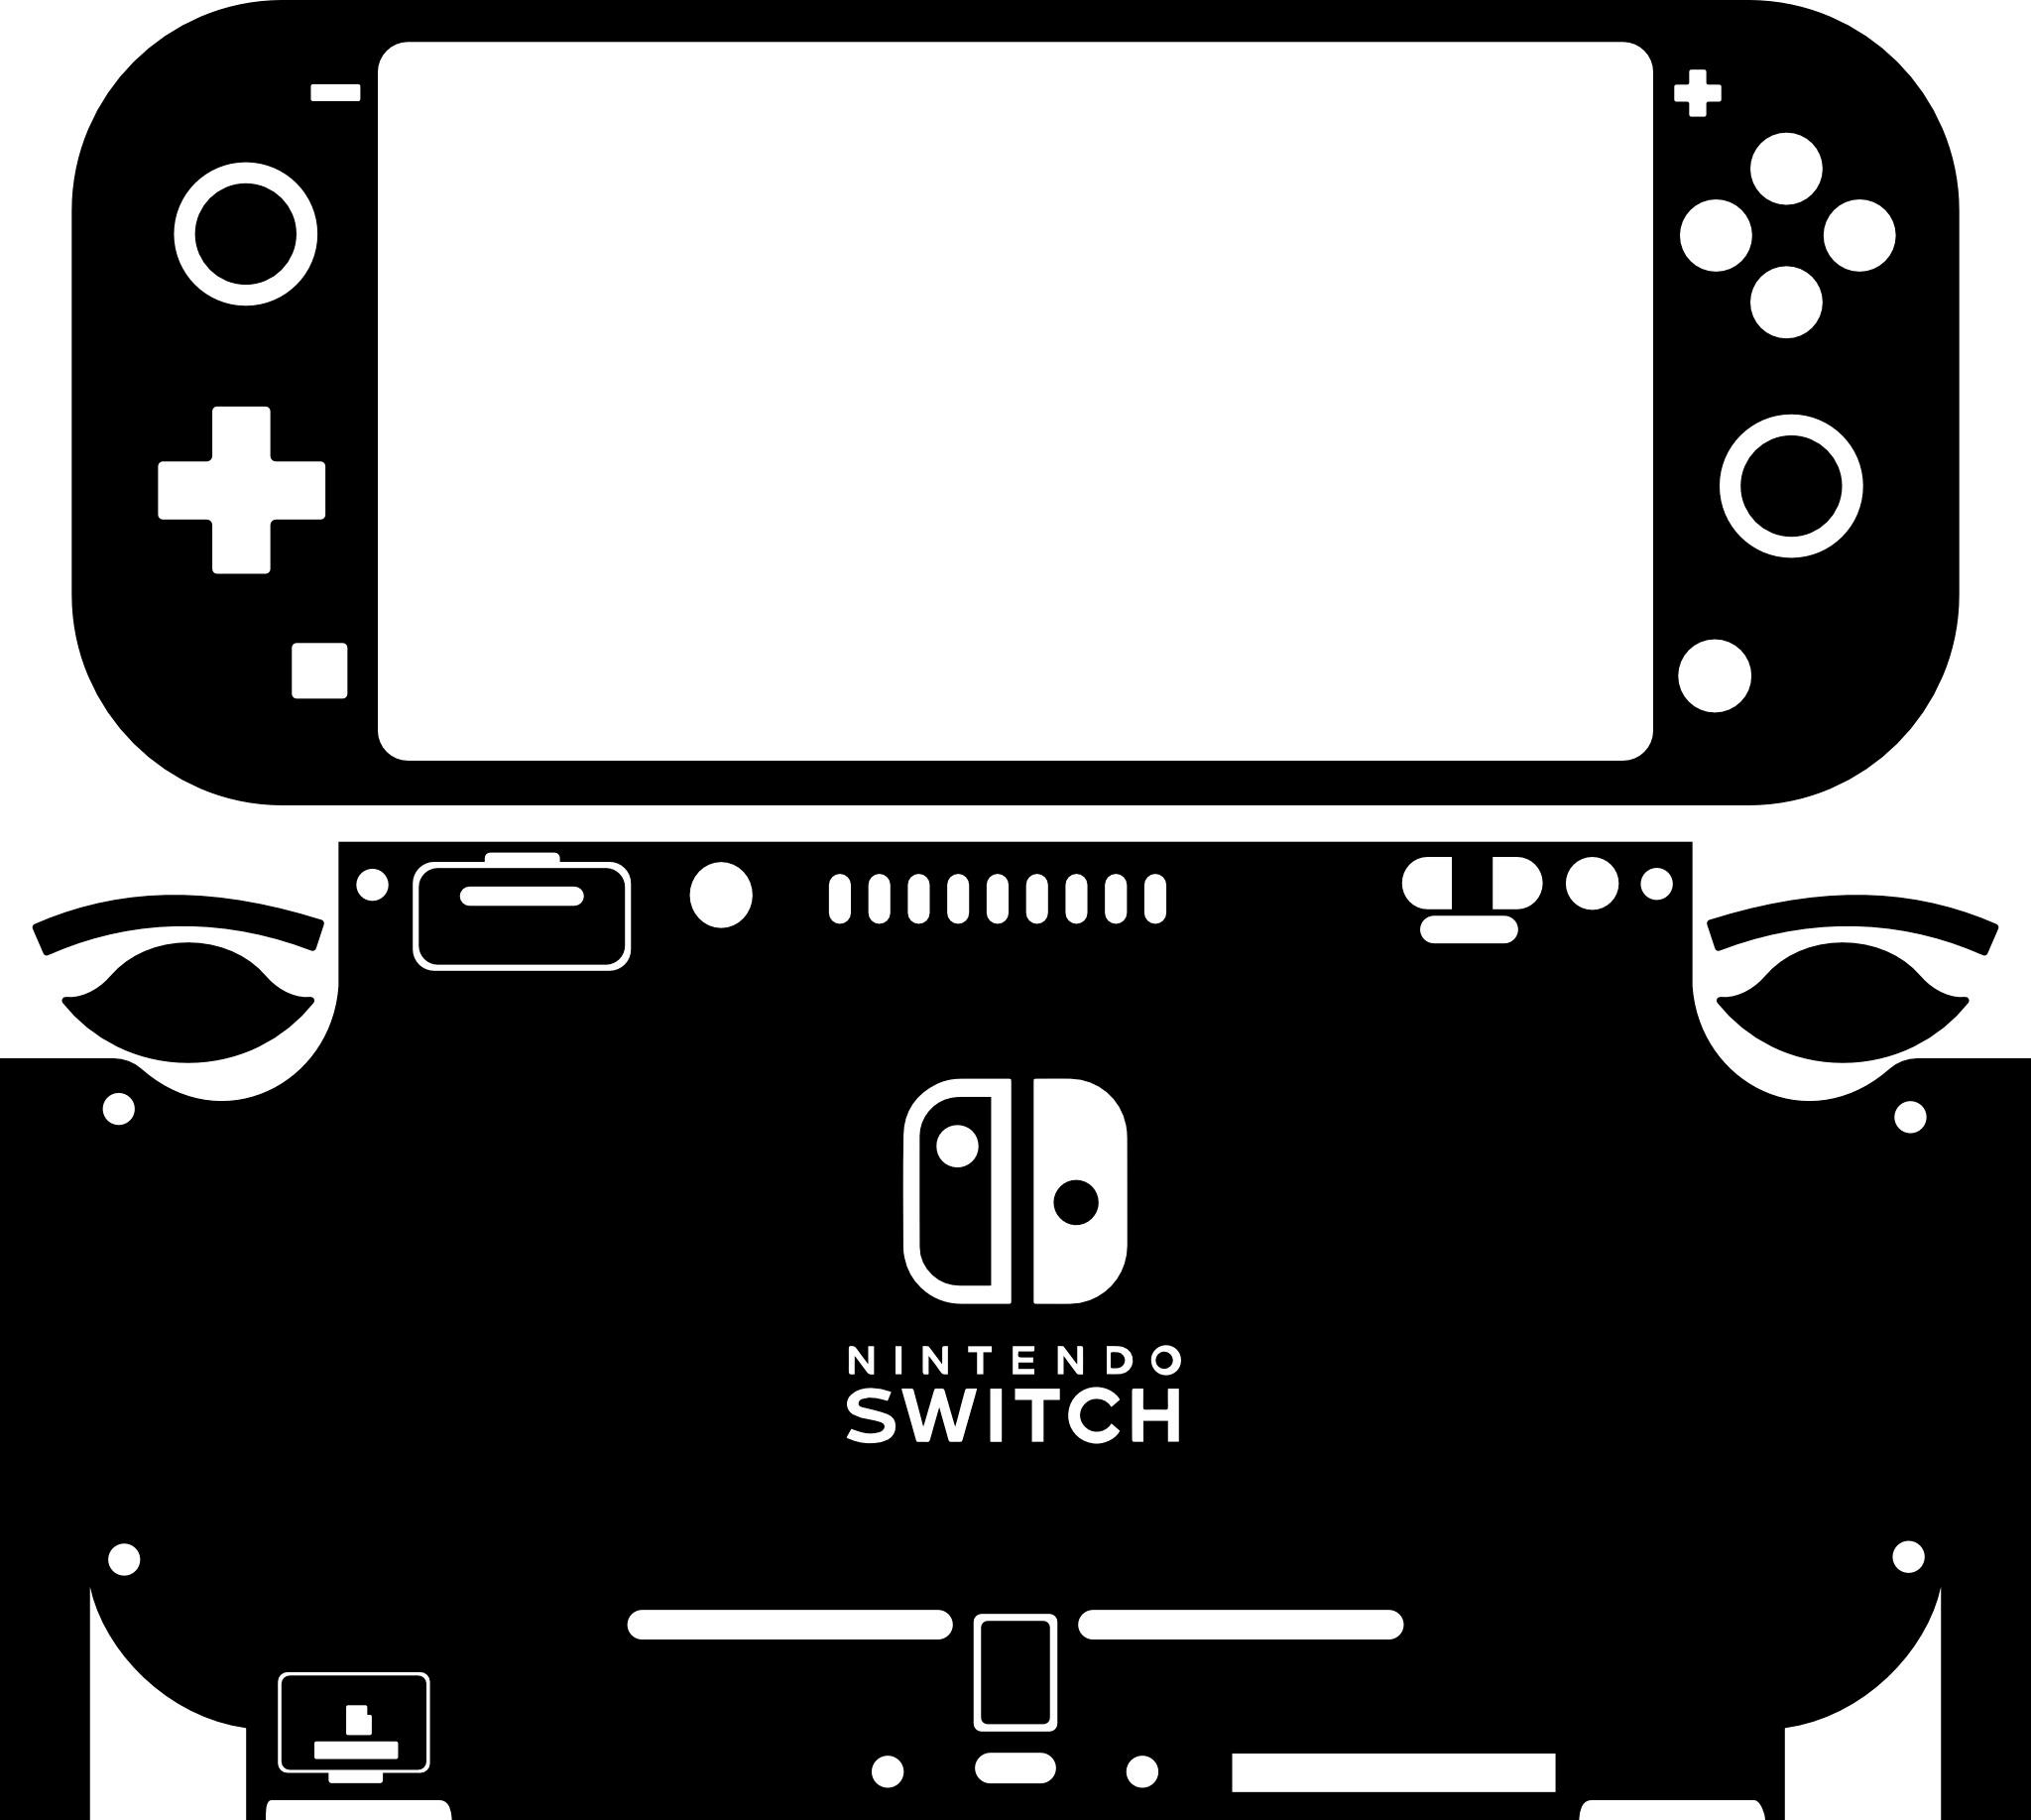 Skin decal dán Nintendo Switch Lite mẫu phối màu cam xanh (dễ dán, đã cắt sẵn)